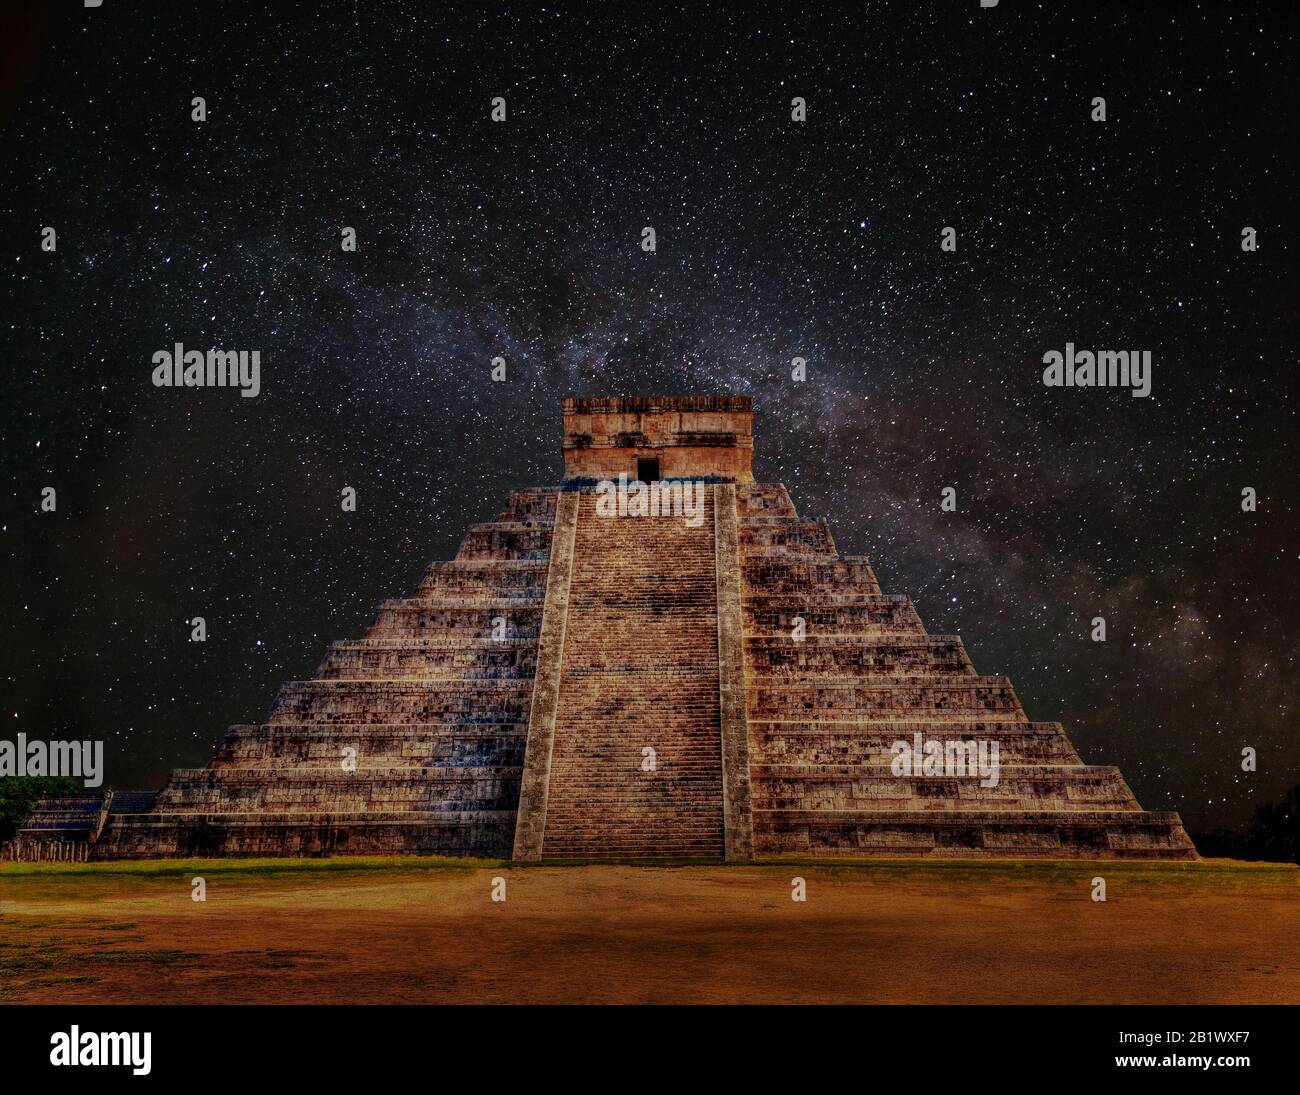 Maya-Pyramide von Kukulcan El Castillo in Chichen Itza, Mexiko bei Nacht mit Milchstraßengalaxie. Als Weltkulturerbe gehört es auch zu den neuen Sieben W. Stockfoto